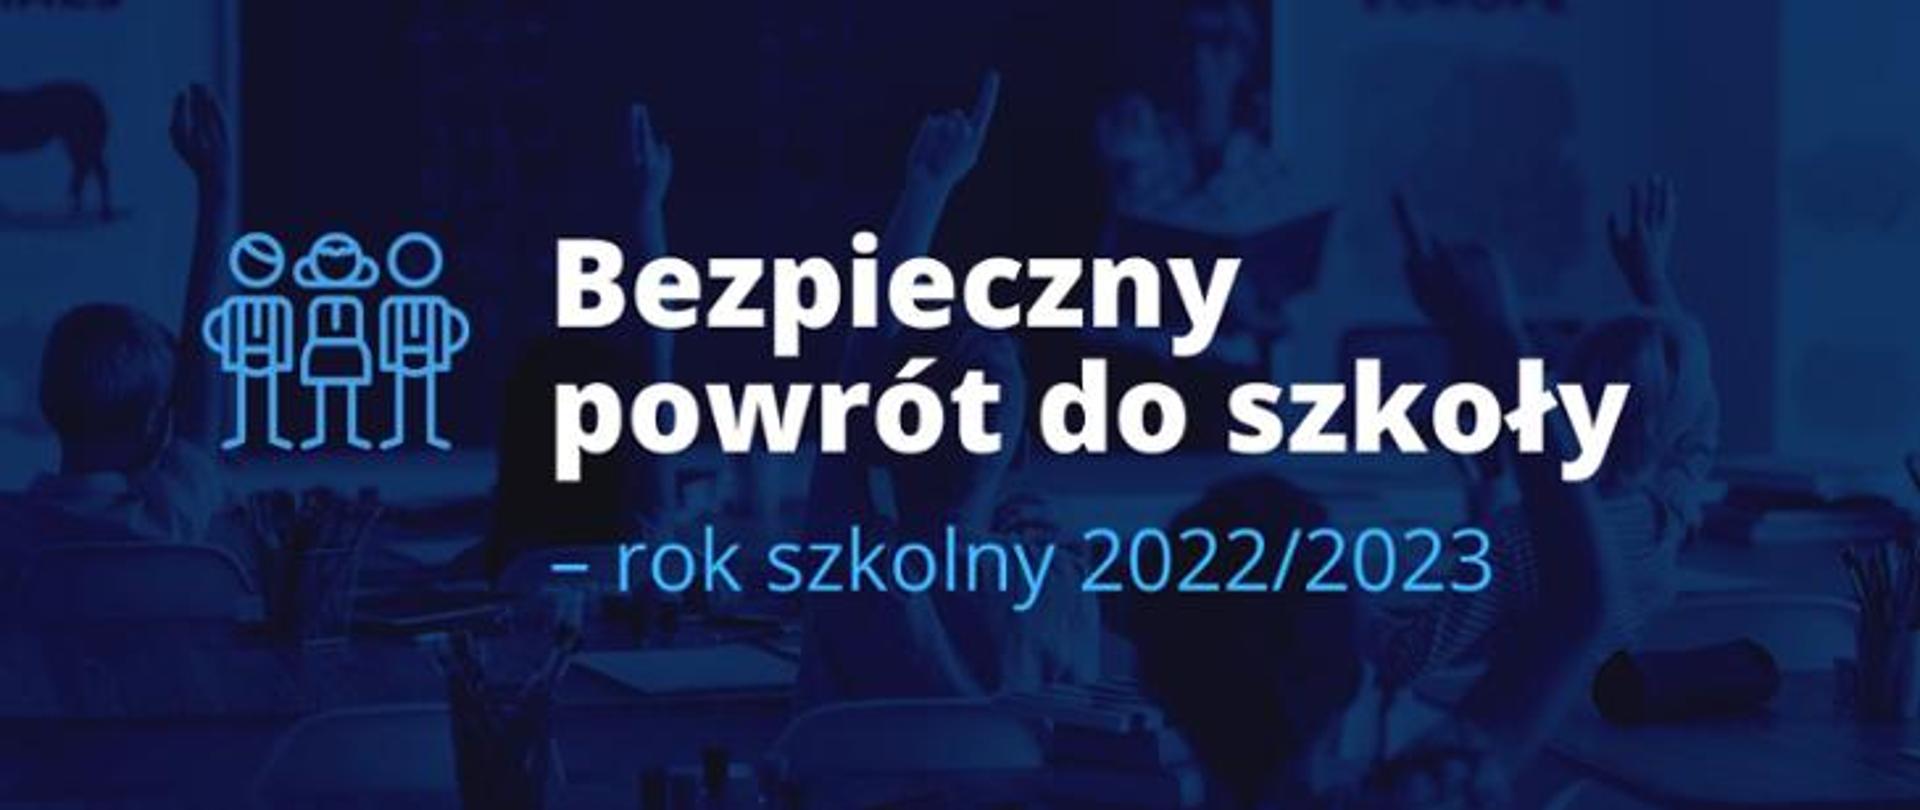 Logo informacyjne bezpieczny powrót do szkoły 2022/2023 niebieskie tło, w centralnej części napis bezpieczny powrót do szkoły